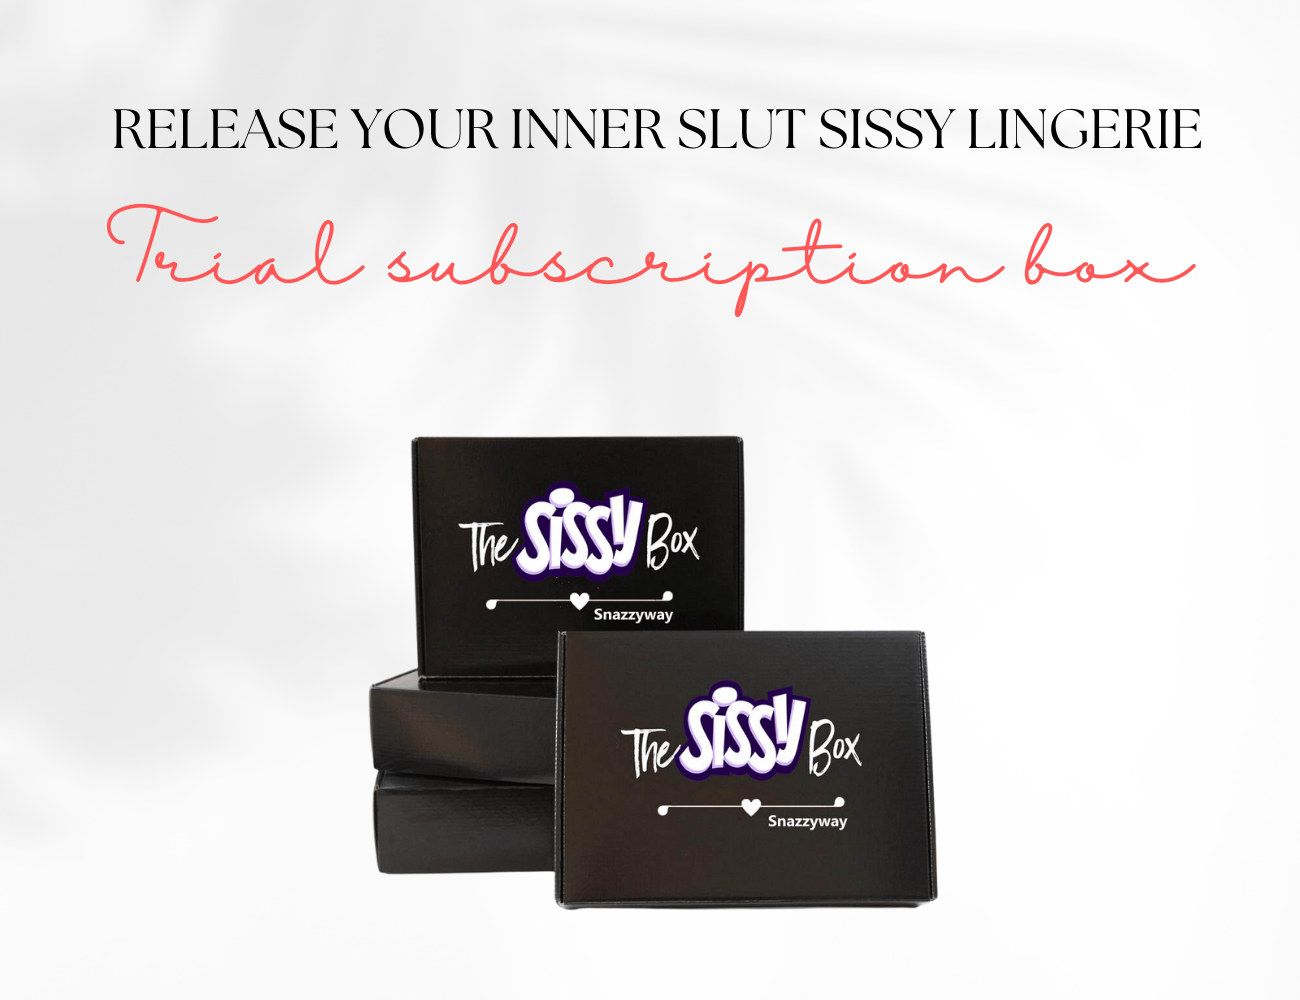 ♥Release your inner slut sissy lingerie box